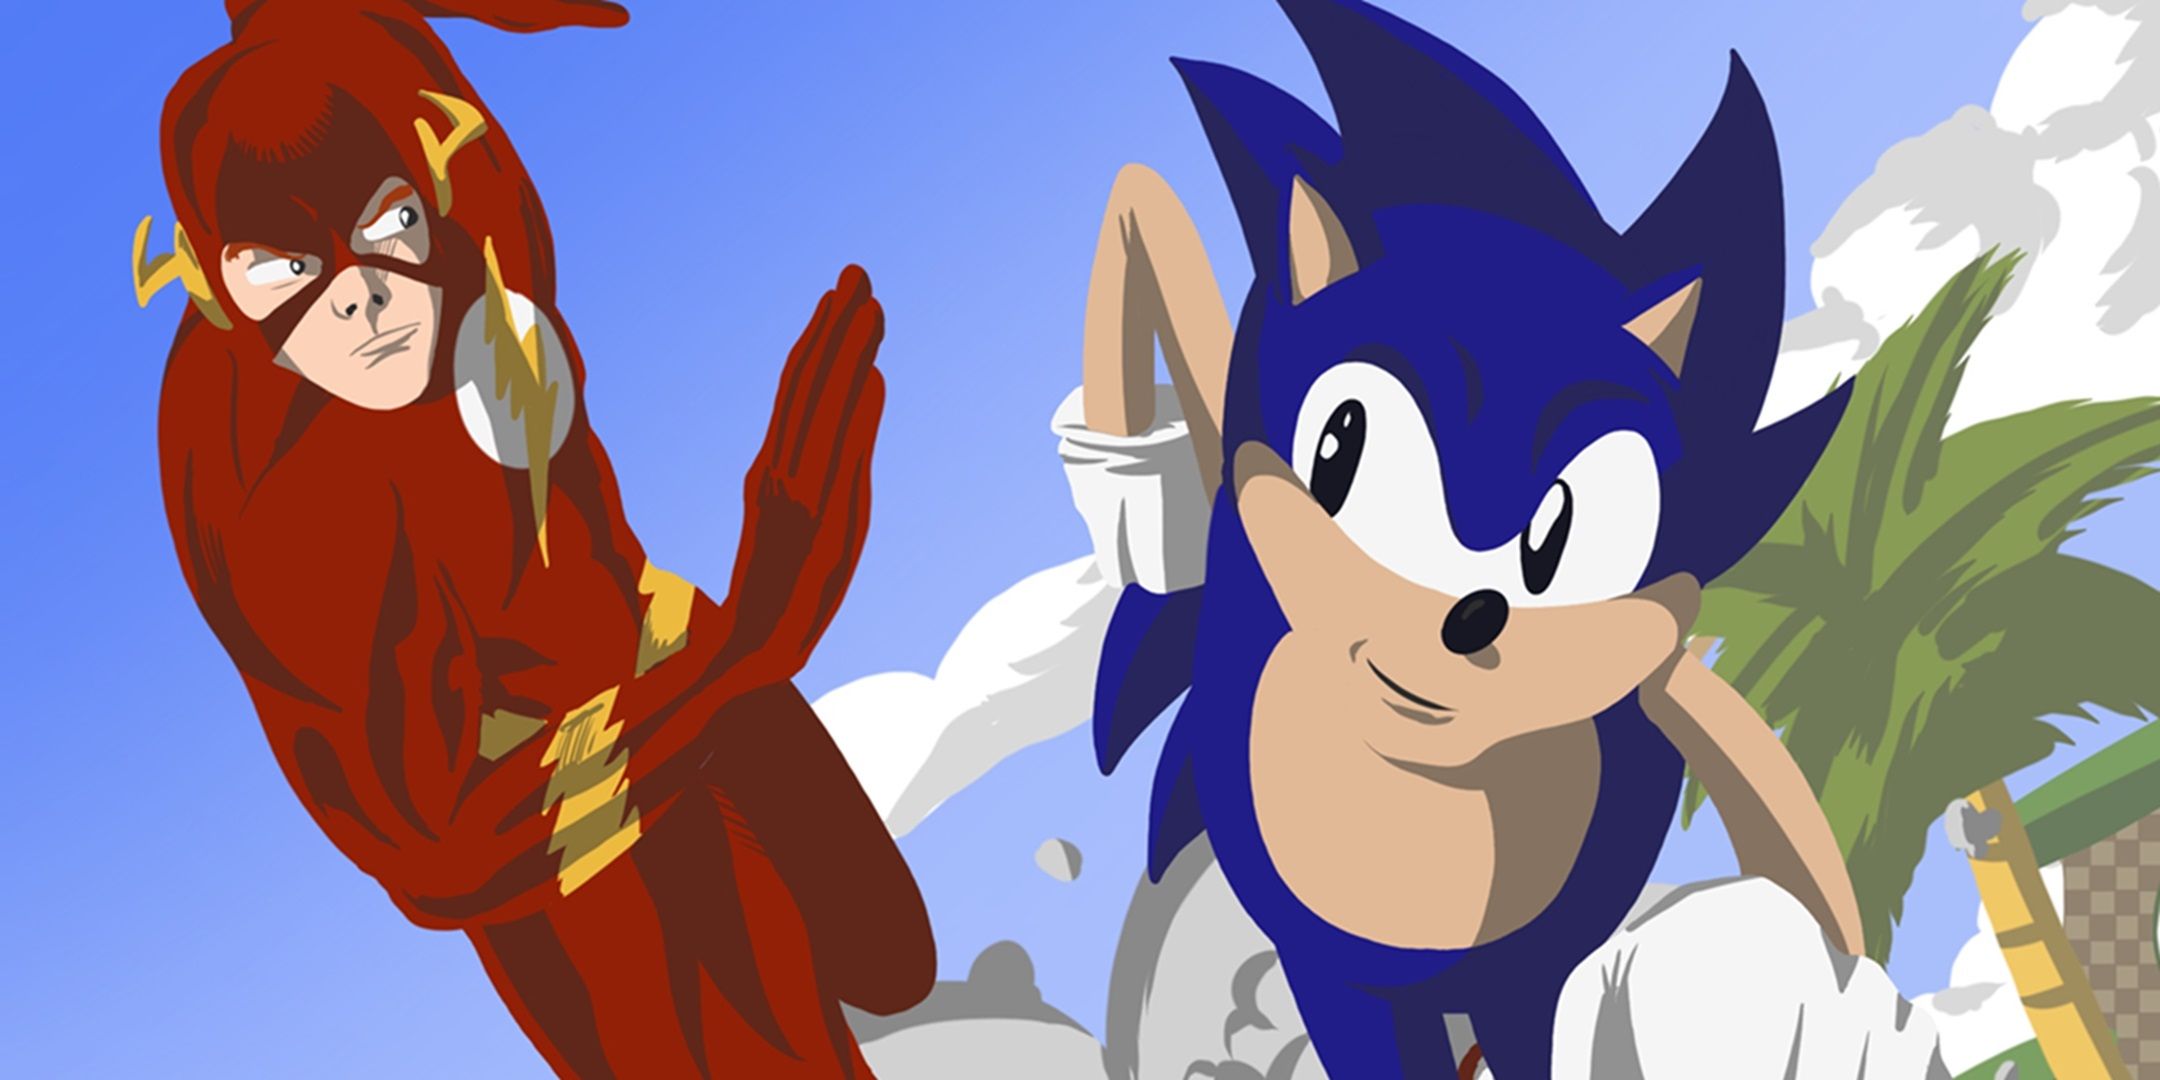 Flash is racing Sonic